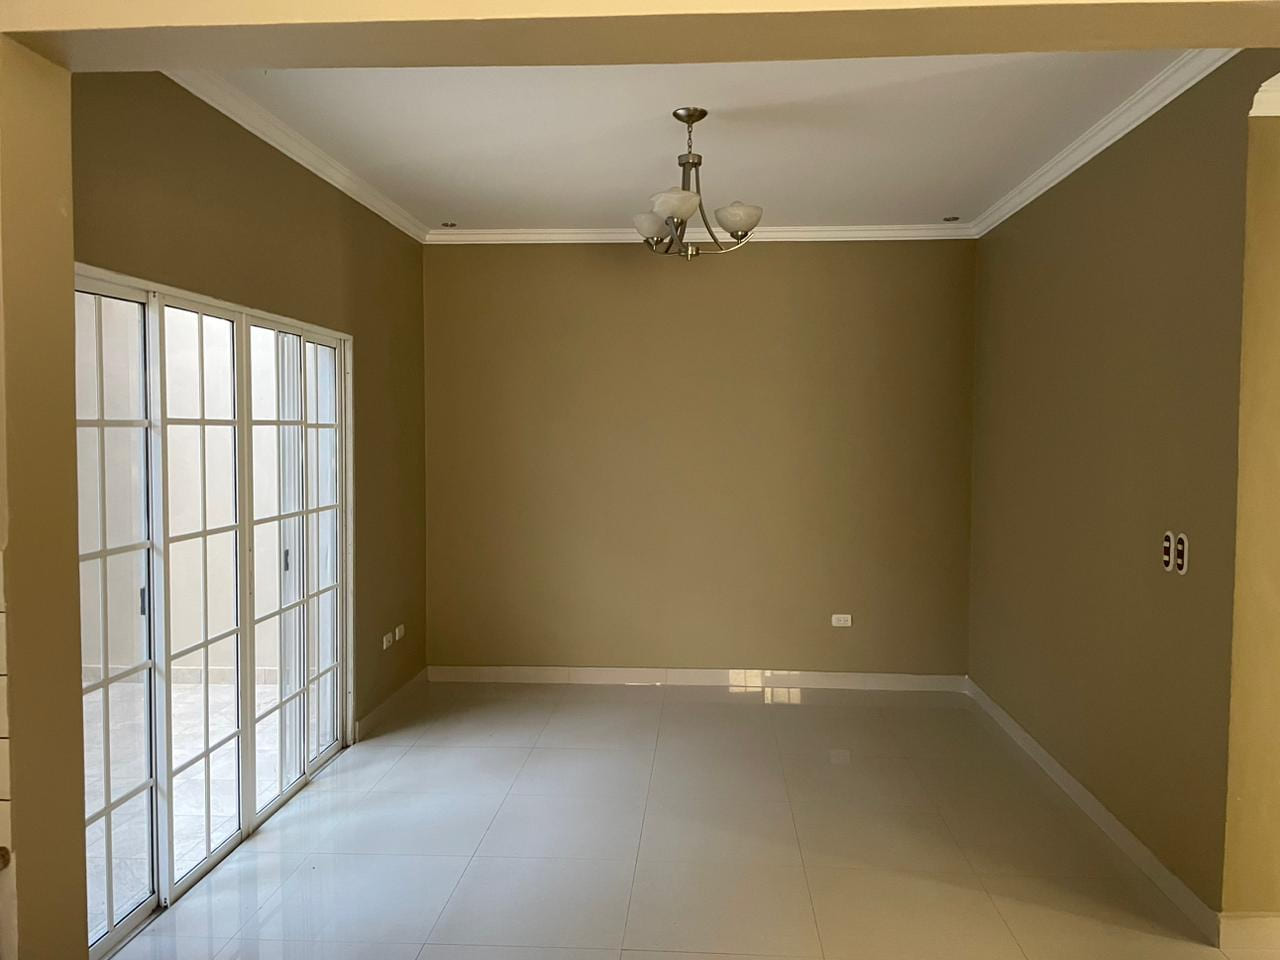 Sala de estar con piso porcelanato, pared color beige, techo tabla yeso y puerta corrediza con acceso al patio.